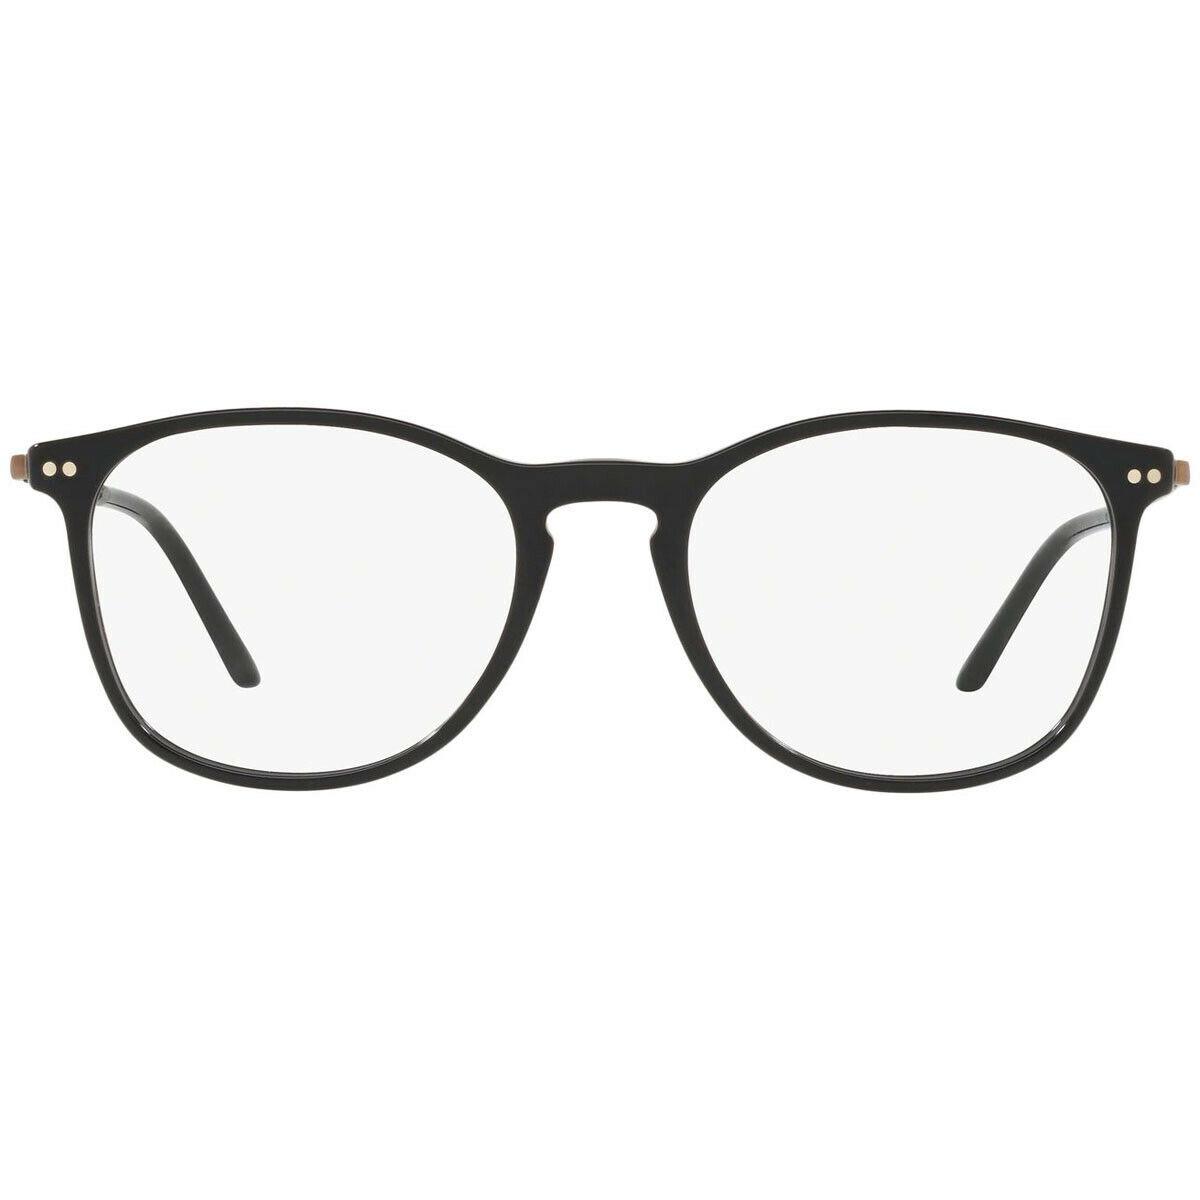 Giorgio Armani AR7160 5017 Black Slim Round Eyeglasses Frame 53-19-145 7160 RX